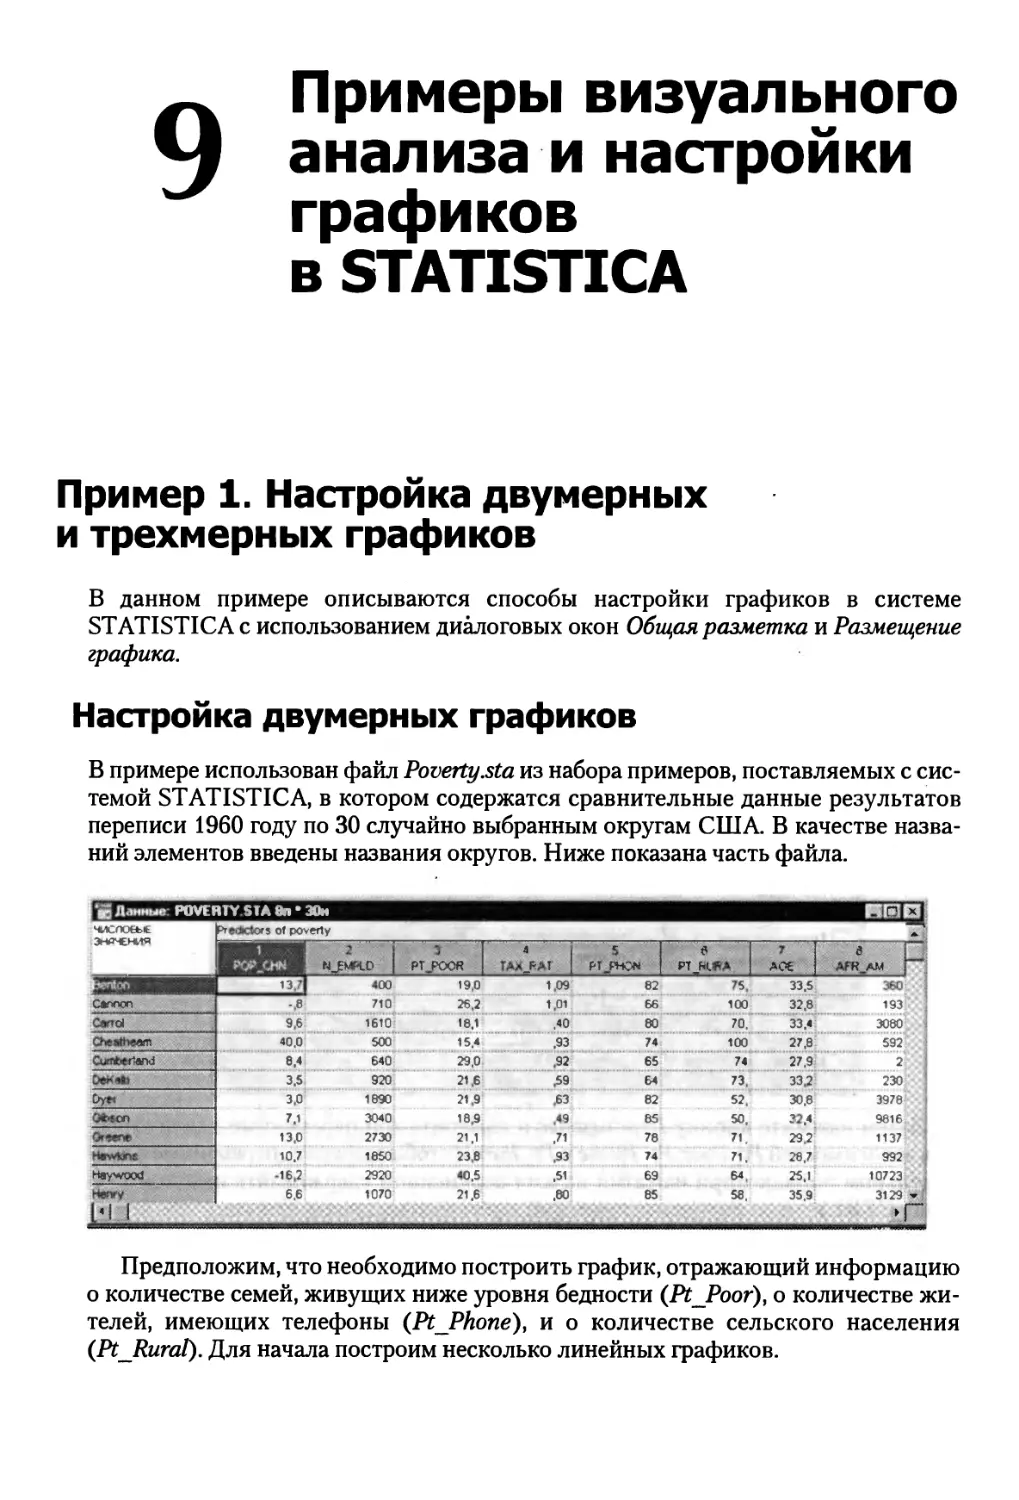 Глава 9. Примеры визуального анализа и настройки графиков в STATISTICA ....